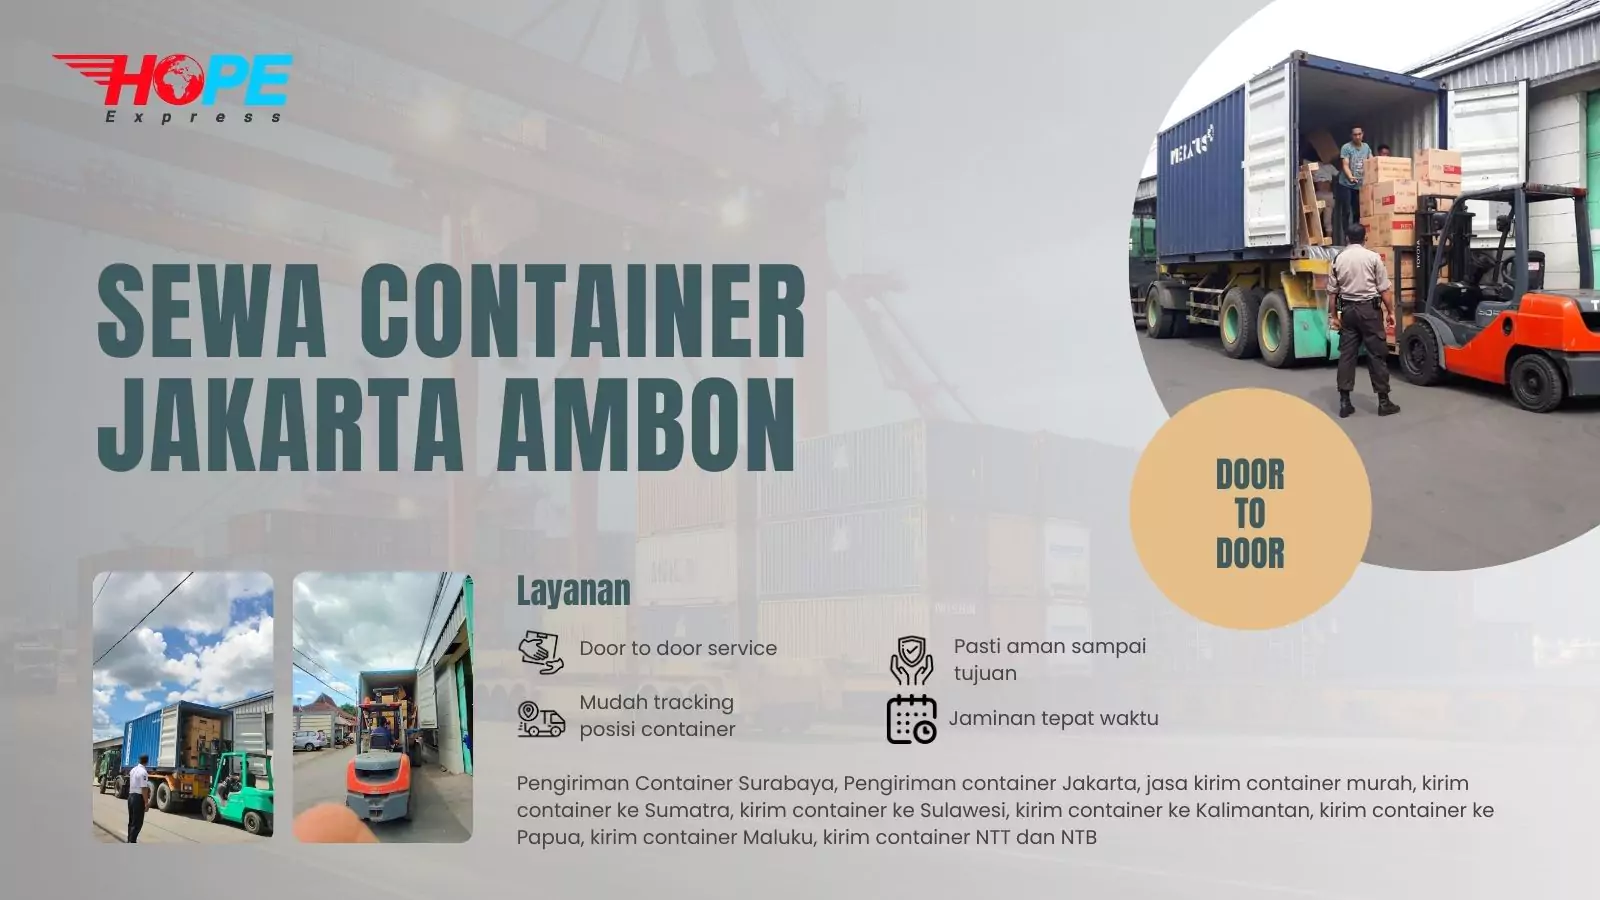 Sewa Container Jakarta Ambon